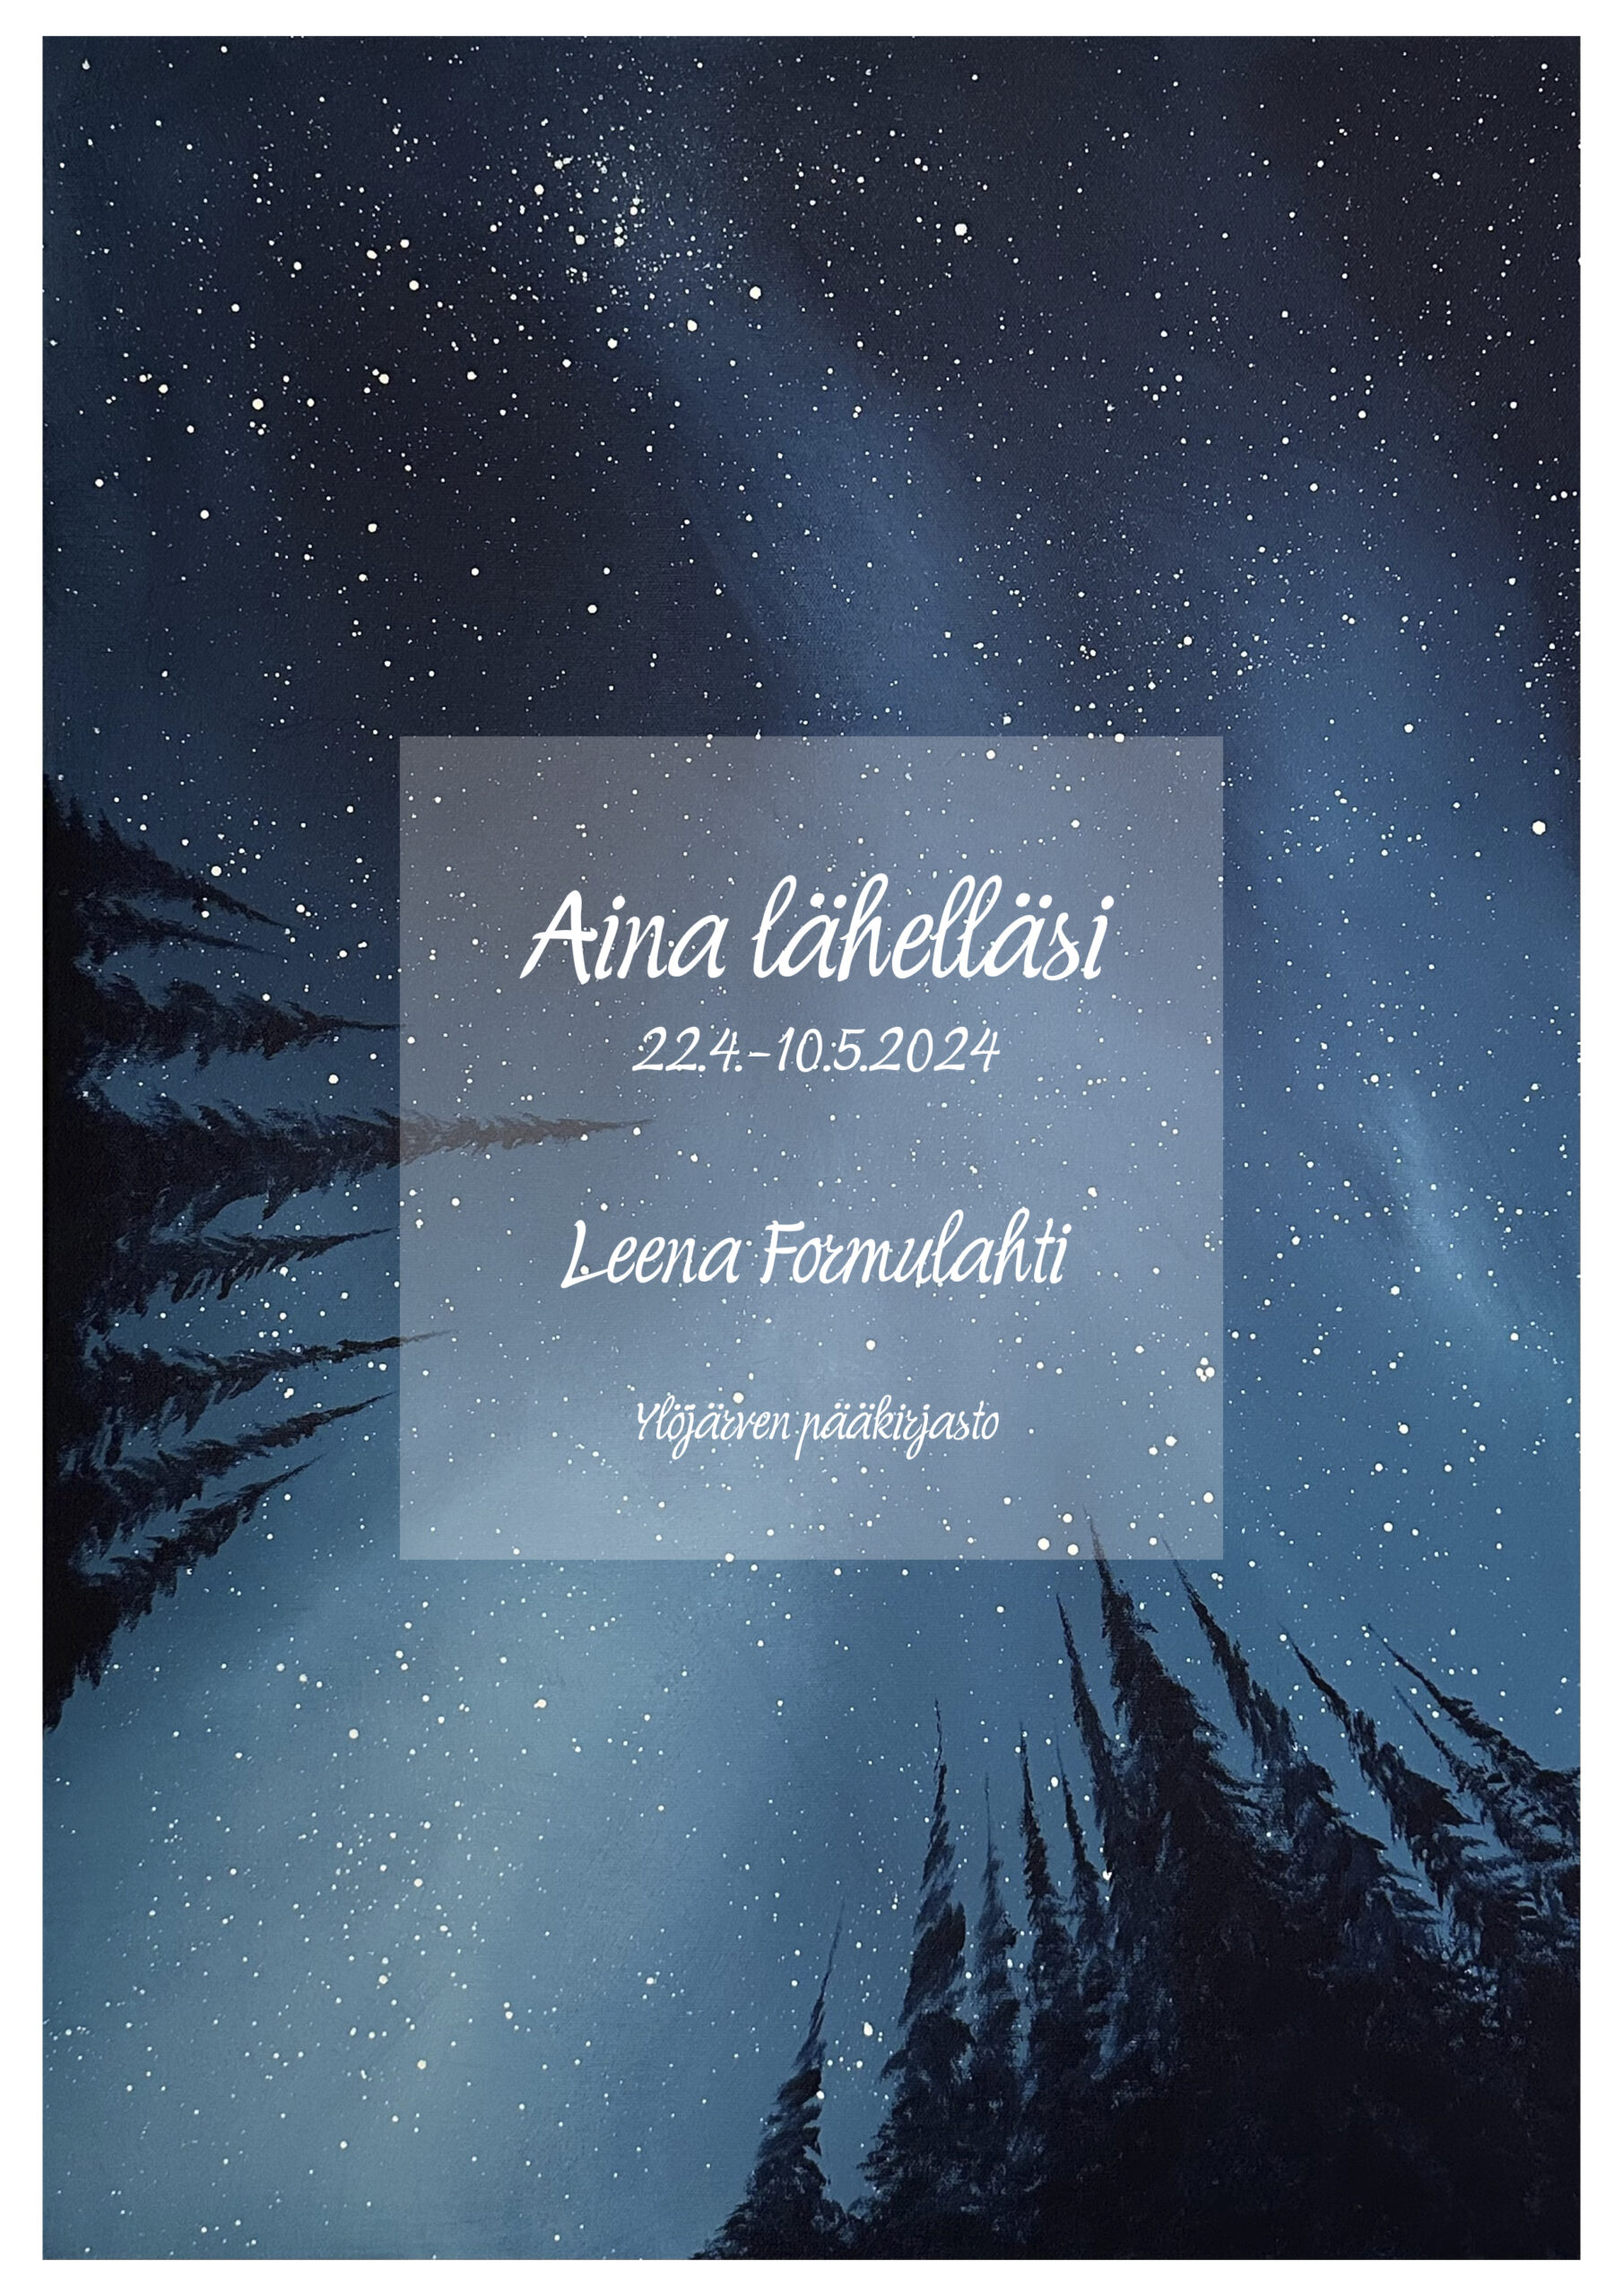 Öinen tähtitaivas, mustat havupuiden varjot reunoilla. Aina lähelläsi -näyttely, Leena Formulahti.